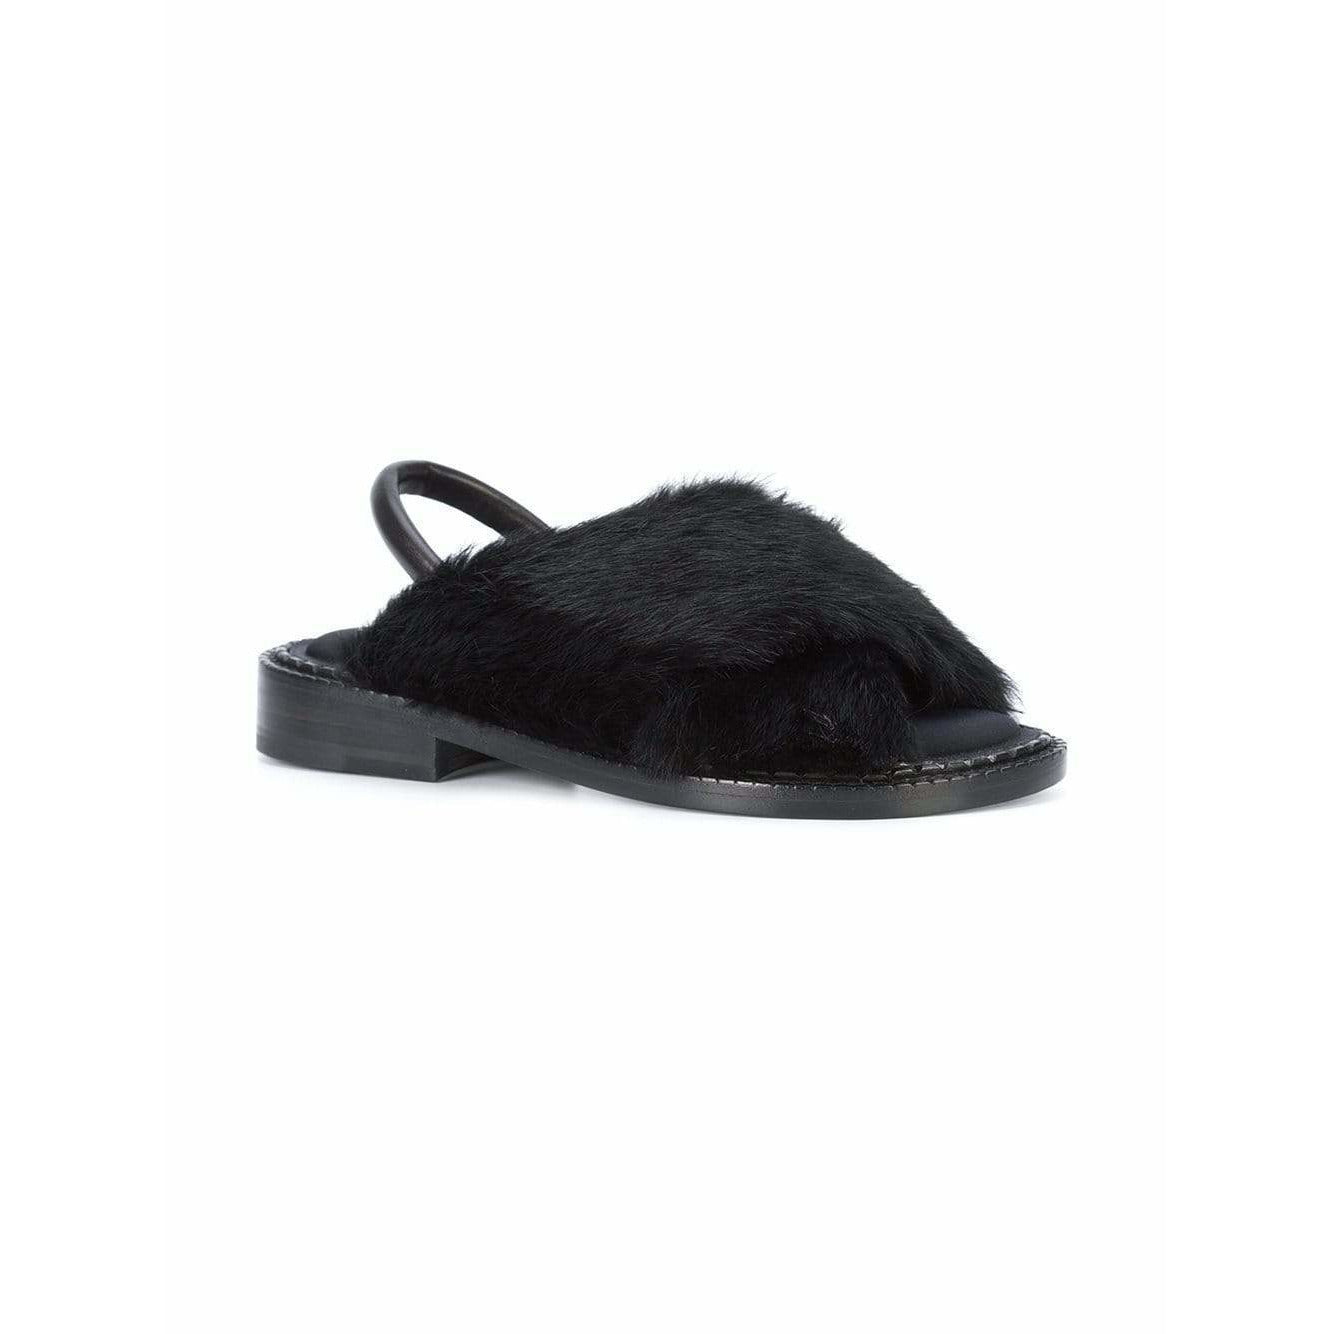 Shoes bloss-fur-sandals Black